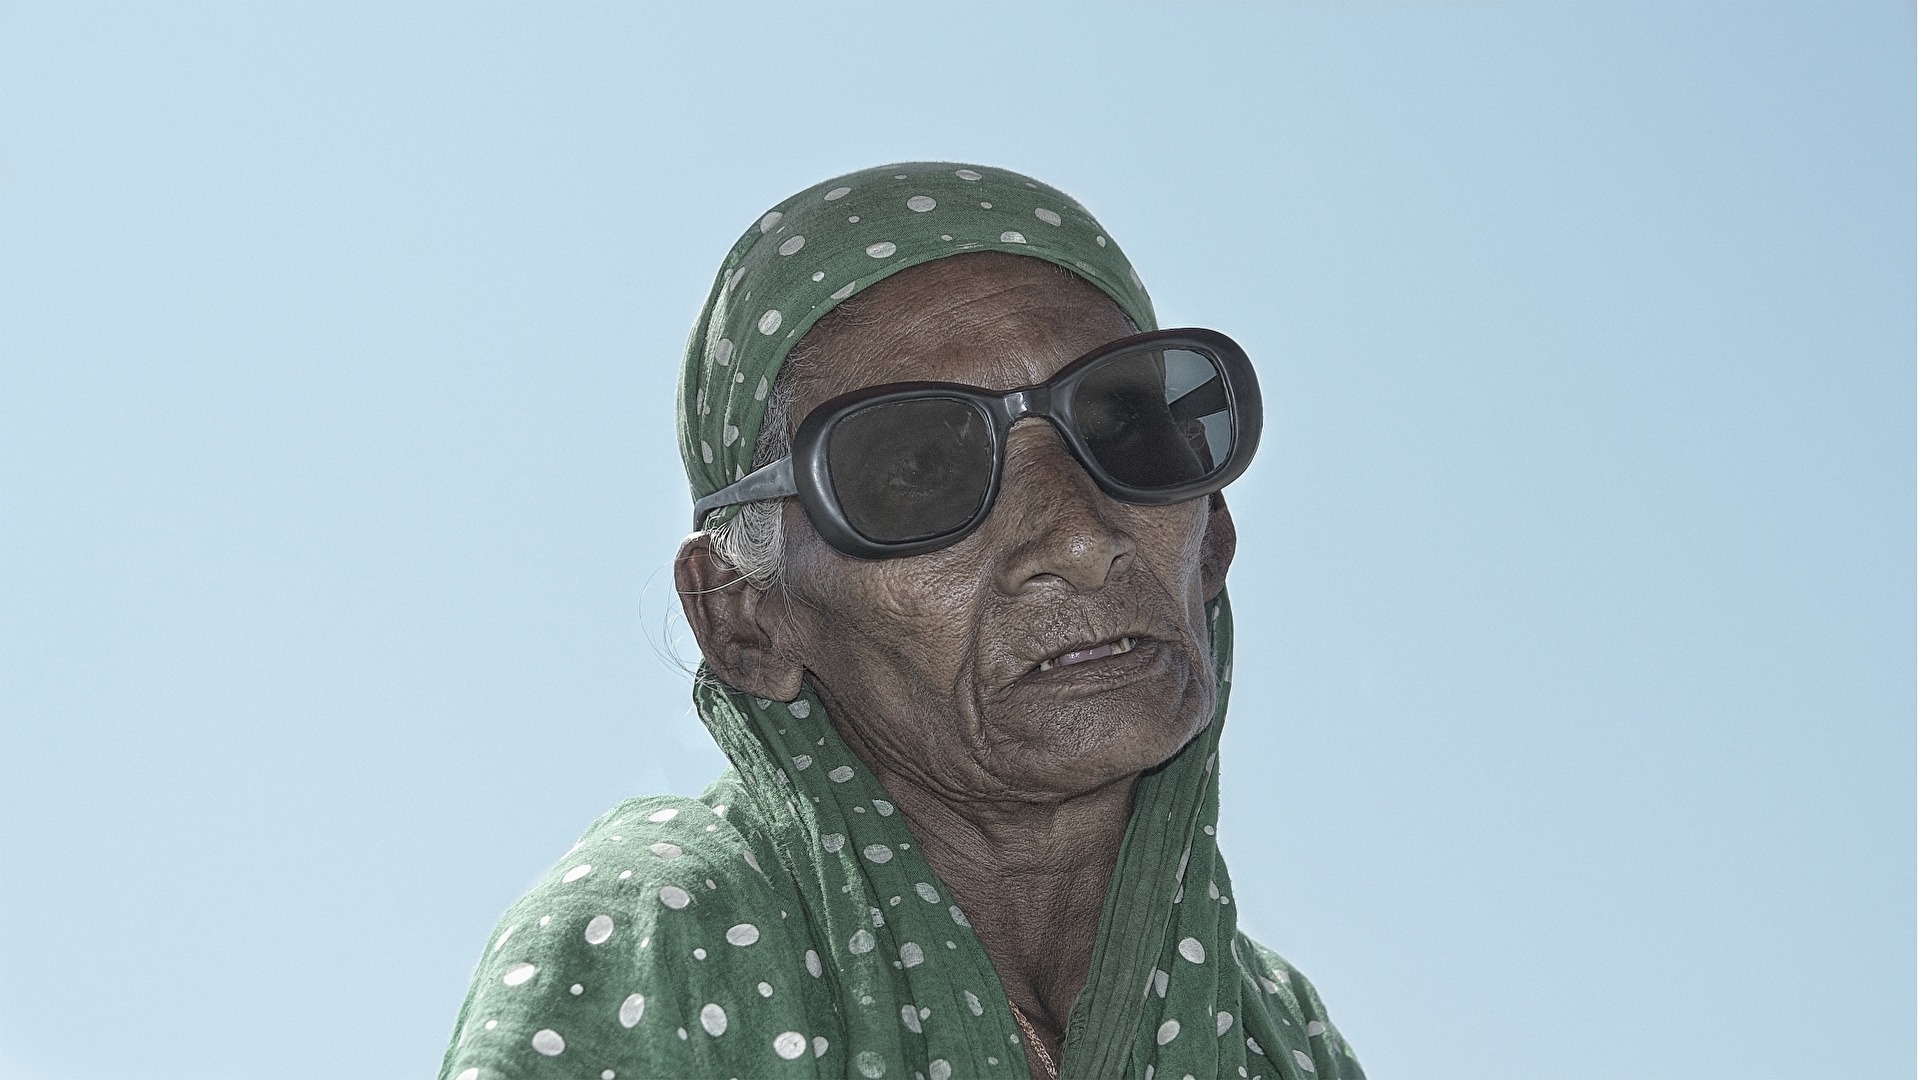 Blend Werk s "the people of Bangladesh"